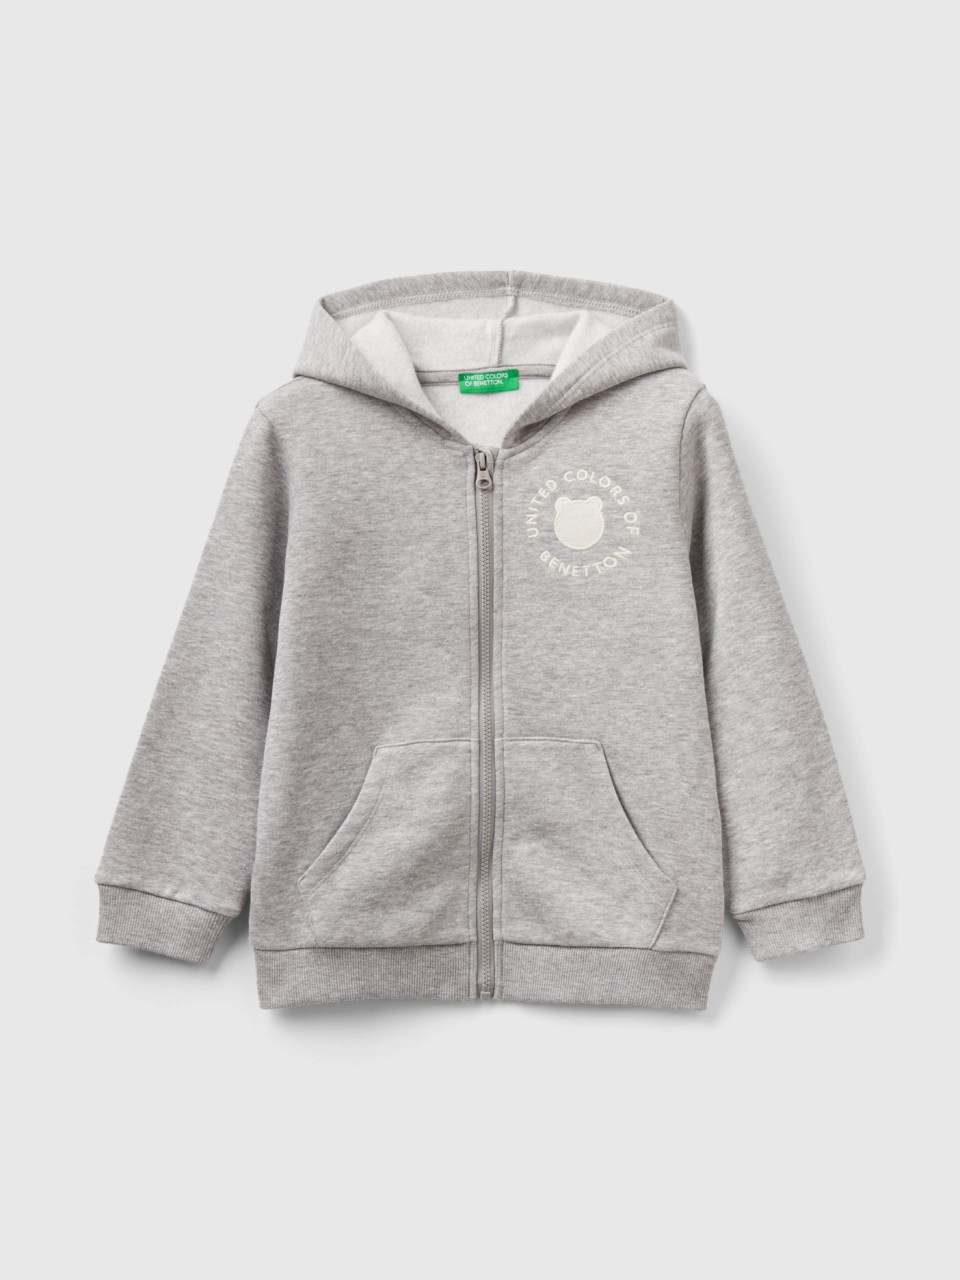 Benetton, Zip-up Sweatshirt In Cotton Blend, Light Gray, Kids